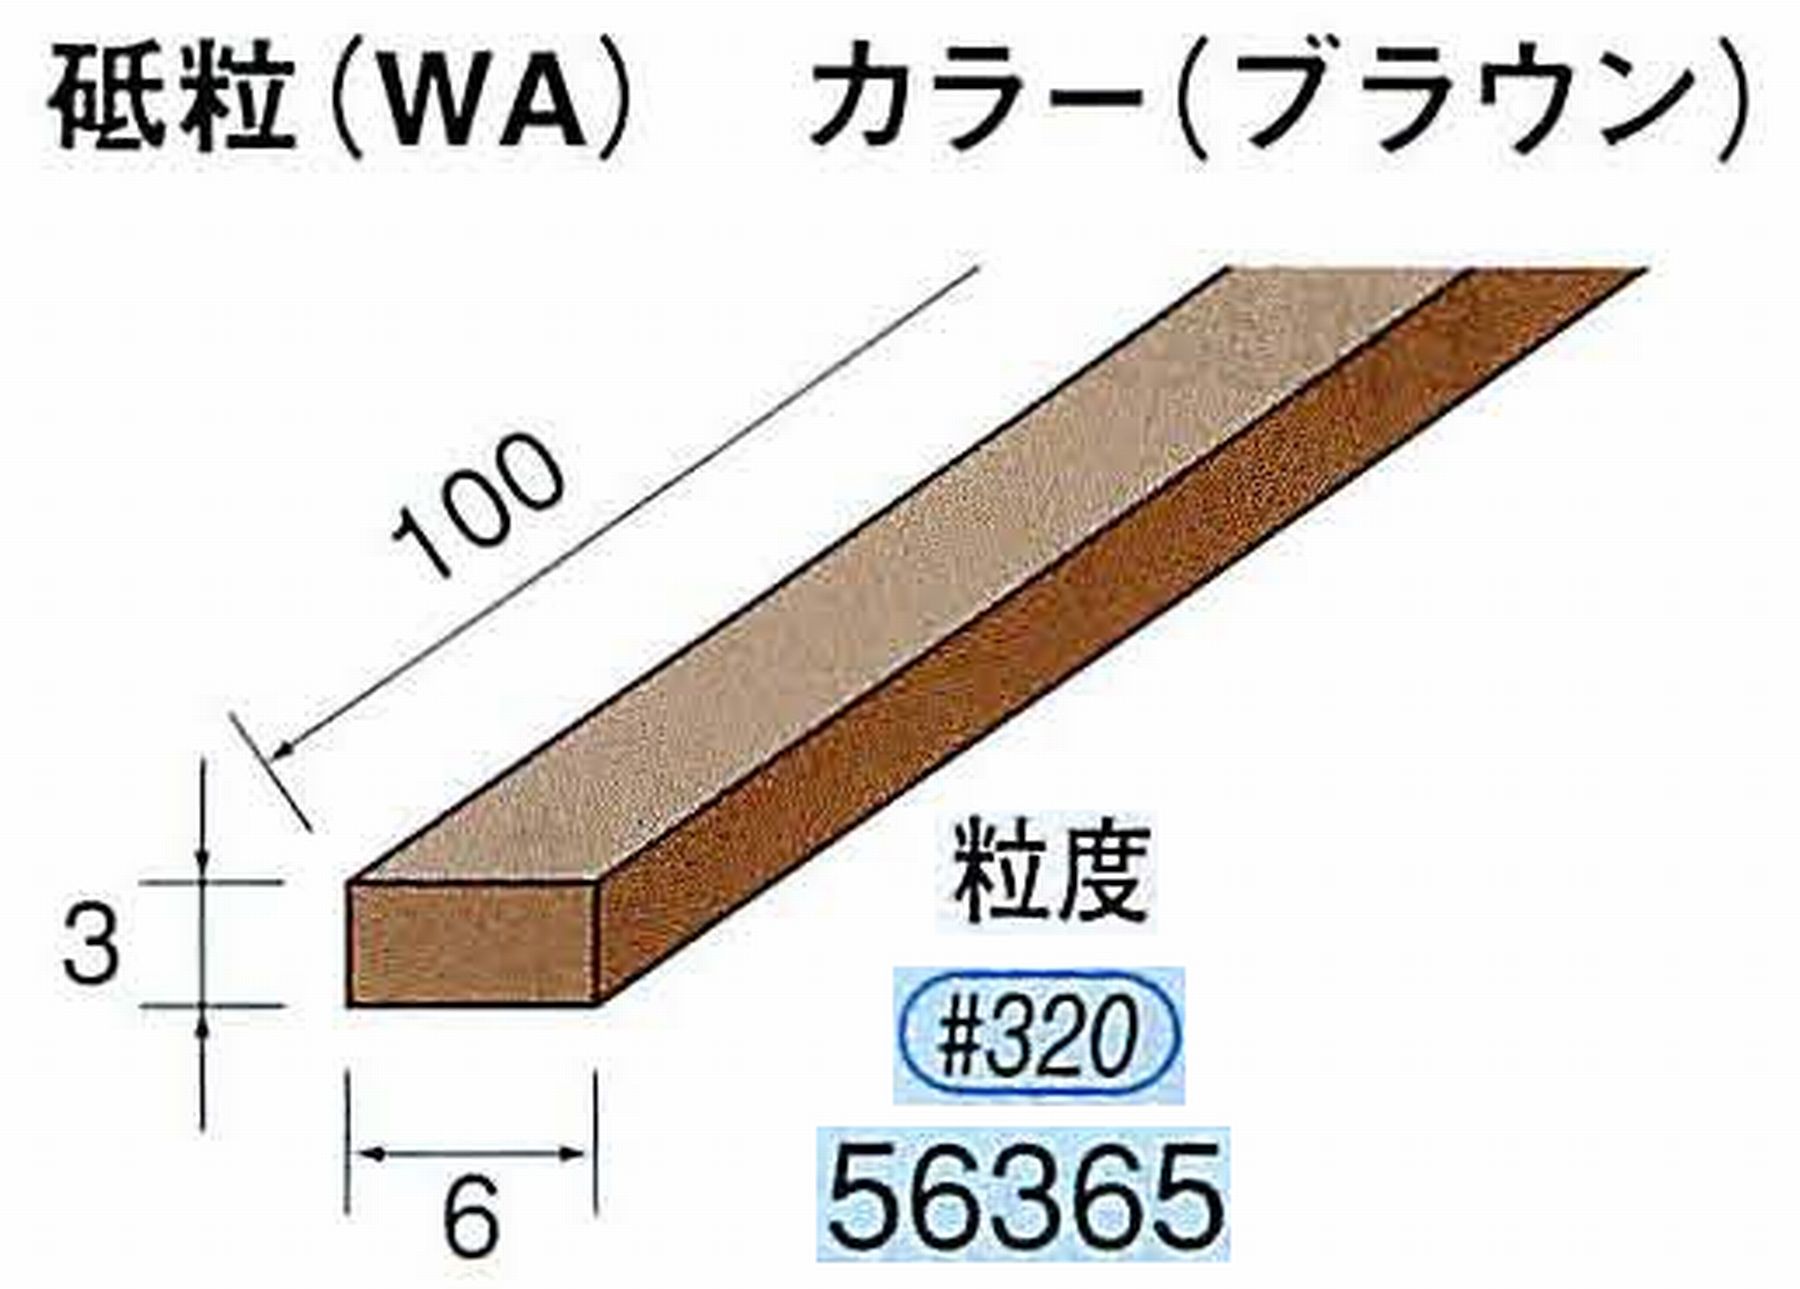 ナカニシ/NAKANISHI スティック砥石 ブラウン・フィニッシュシリーズ 砥粒(WA) 56365